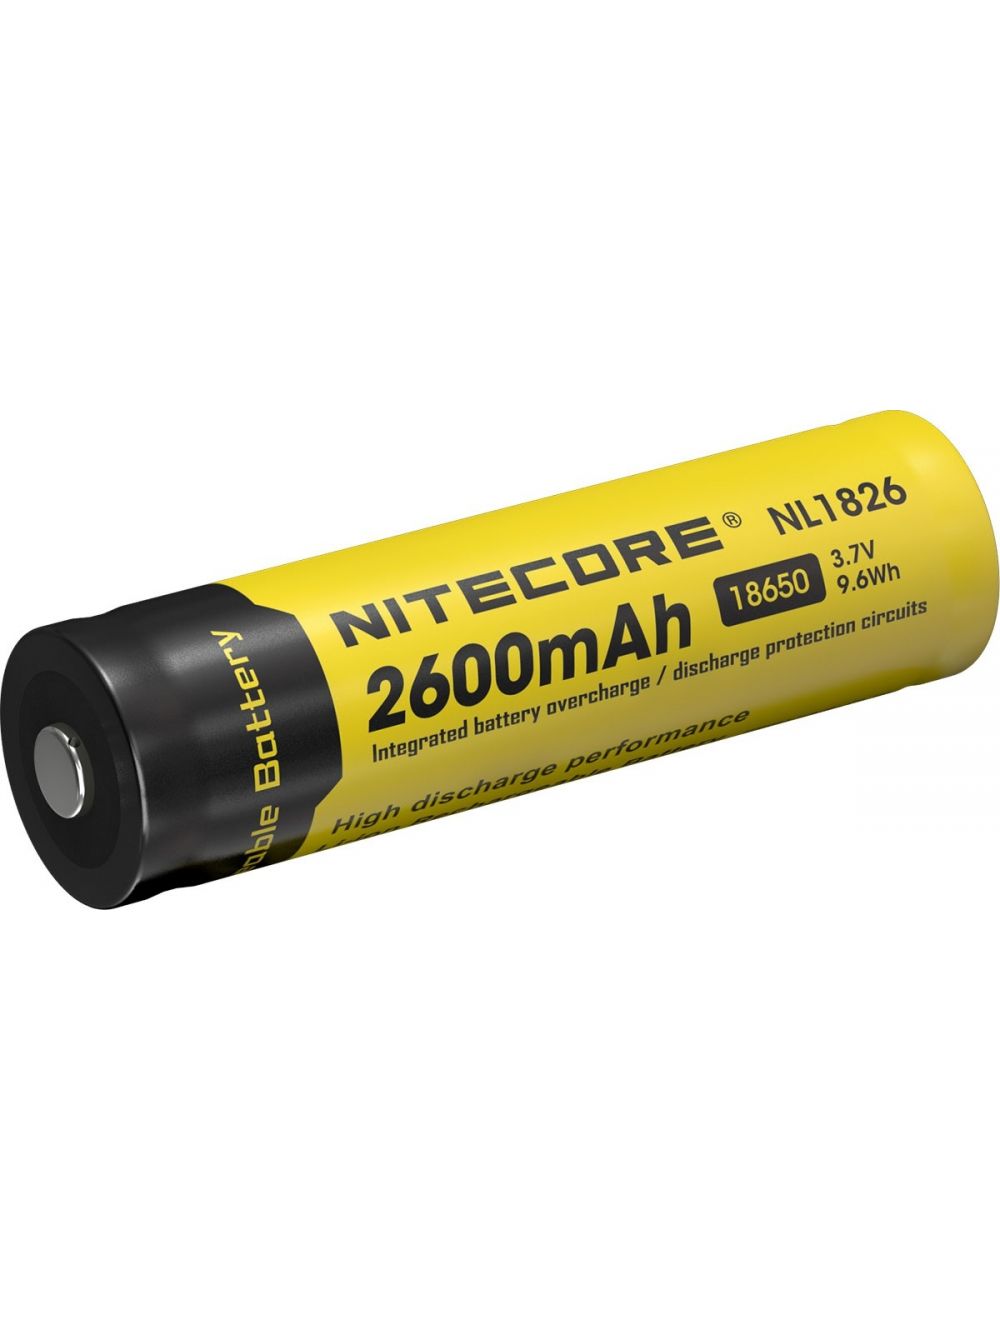 desinfecteren Waarneembaar schermutseling Nitecore NL1826 Oplaadbare 18650 Li-Ion batterij 2600mAh kopen?  Multitools.nl